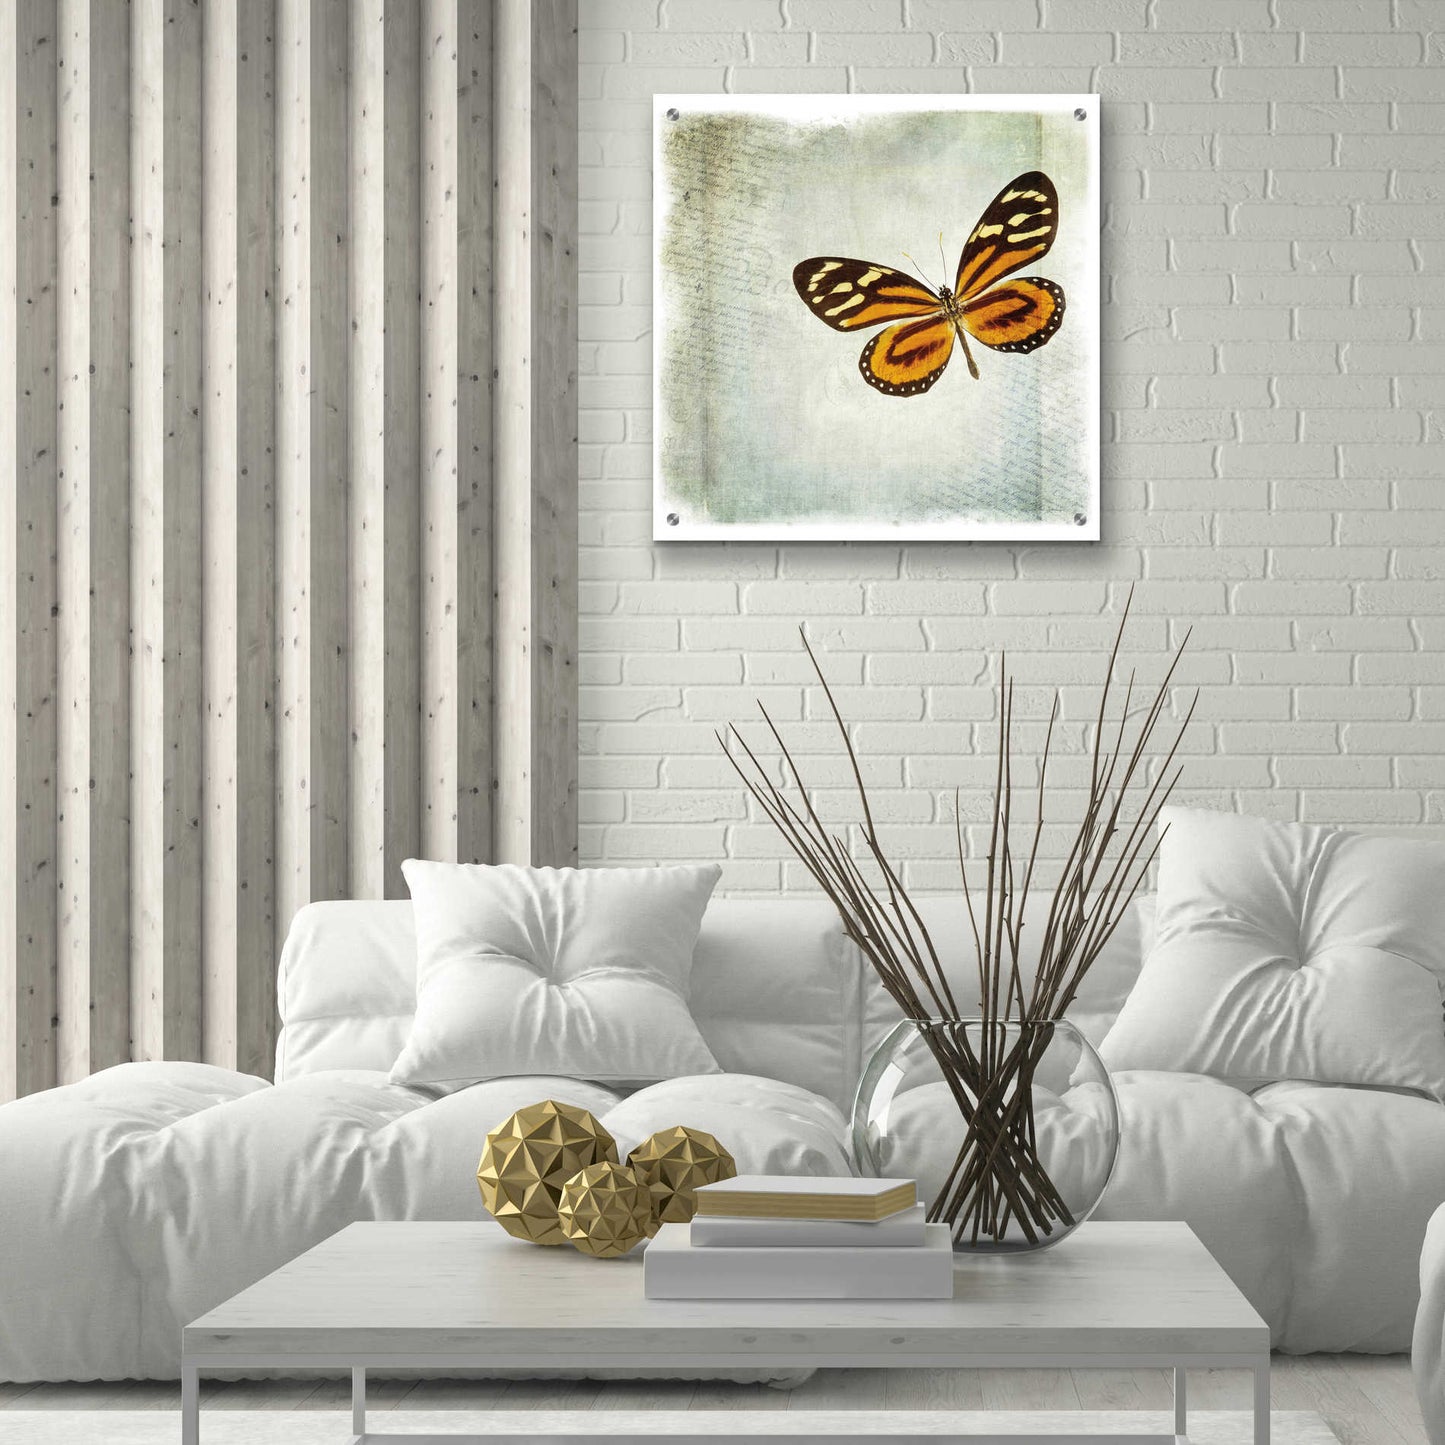 Epic Art 'Floating Butterfly VI' by Debra Van Swearingen, Acrylic Glass Wall Art,24x24